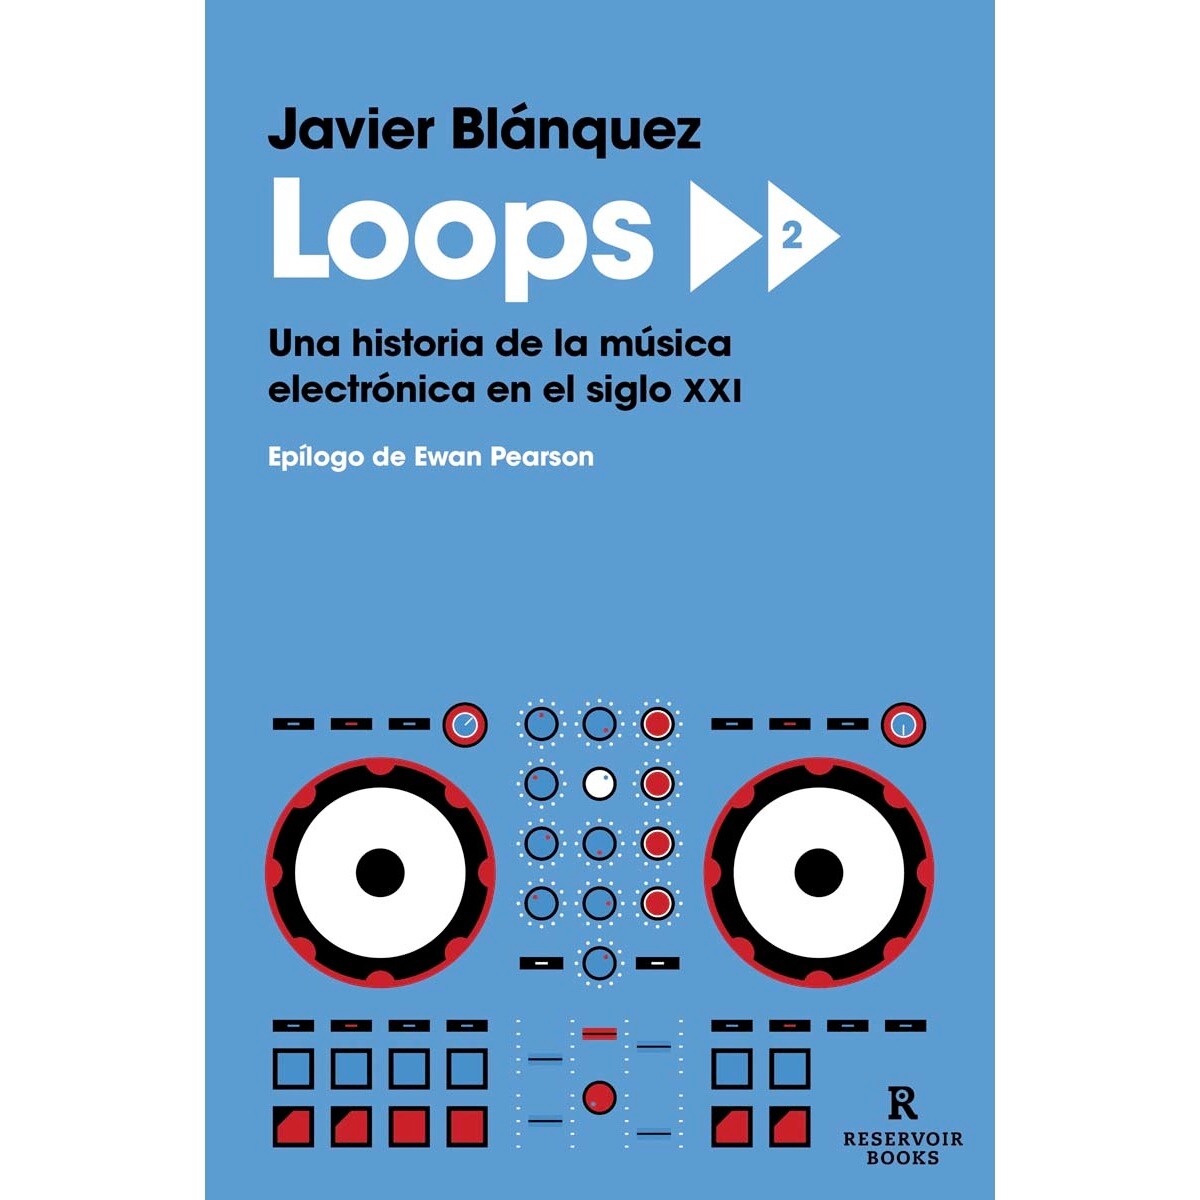 "Loops 2: Una historia de la música electrónica en el siglo XXI" de Javier Blánquez